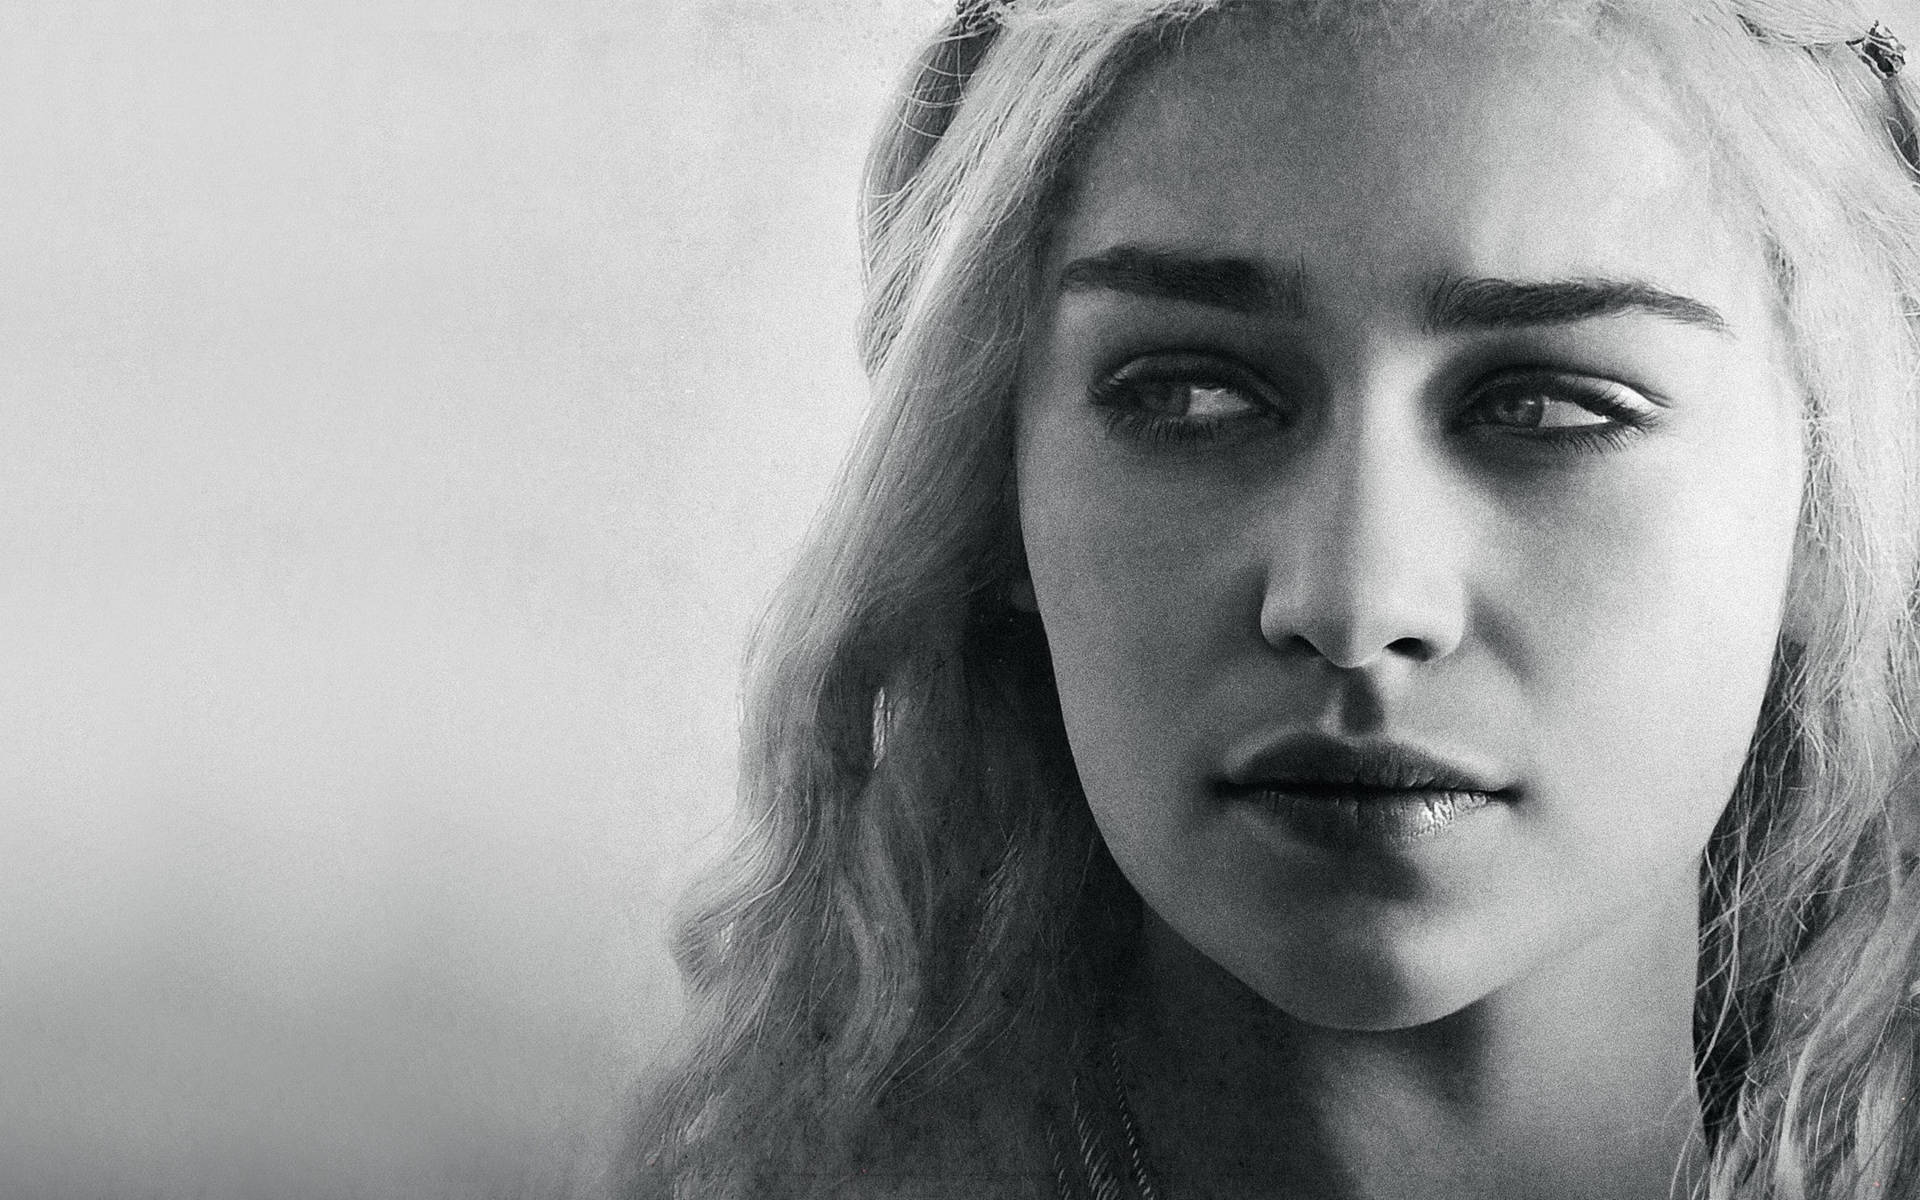 Daenerys Targaryen Monochrome Portrait Wallpaper